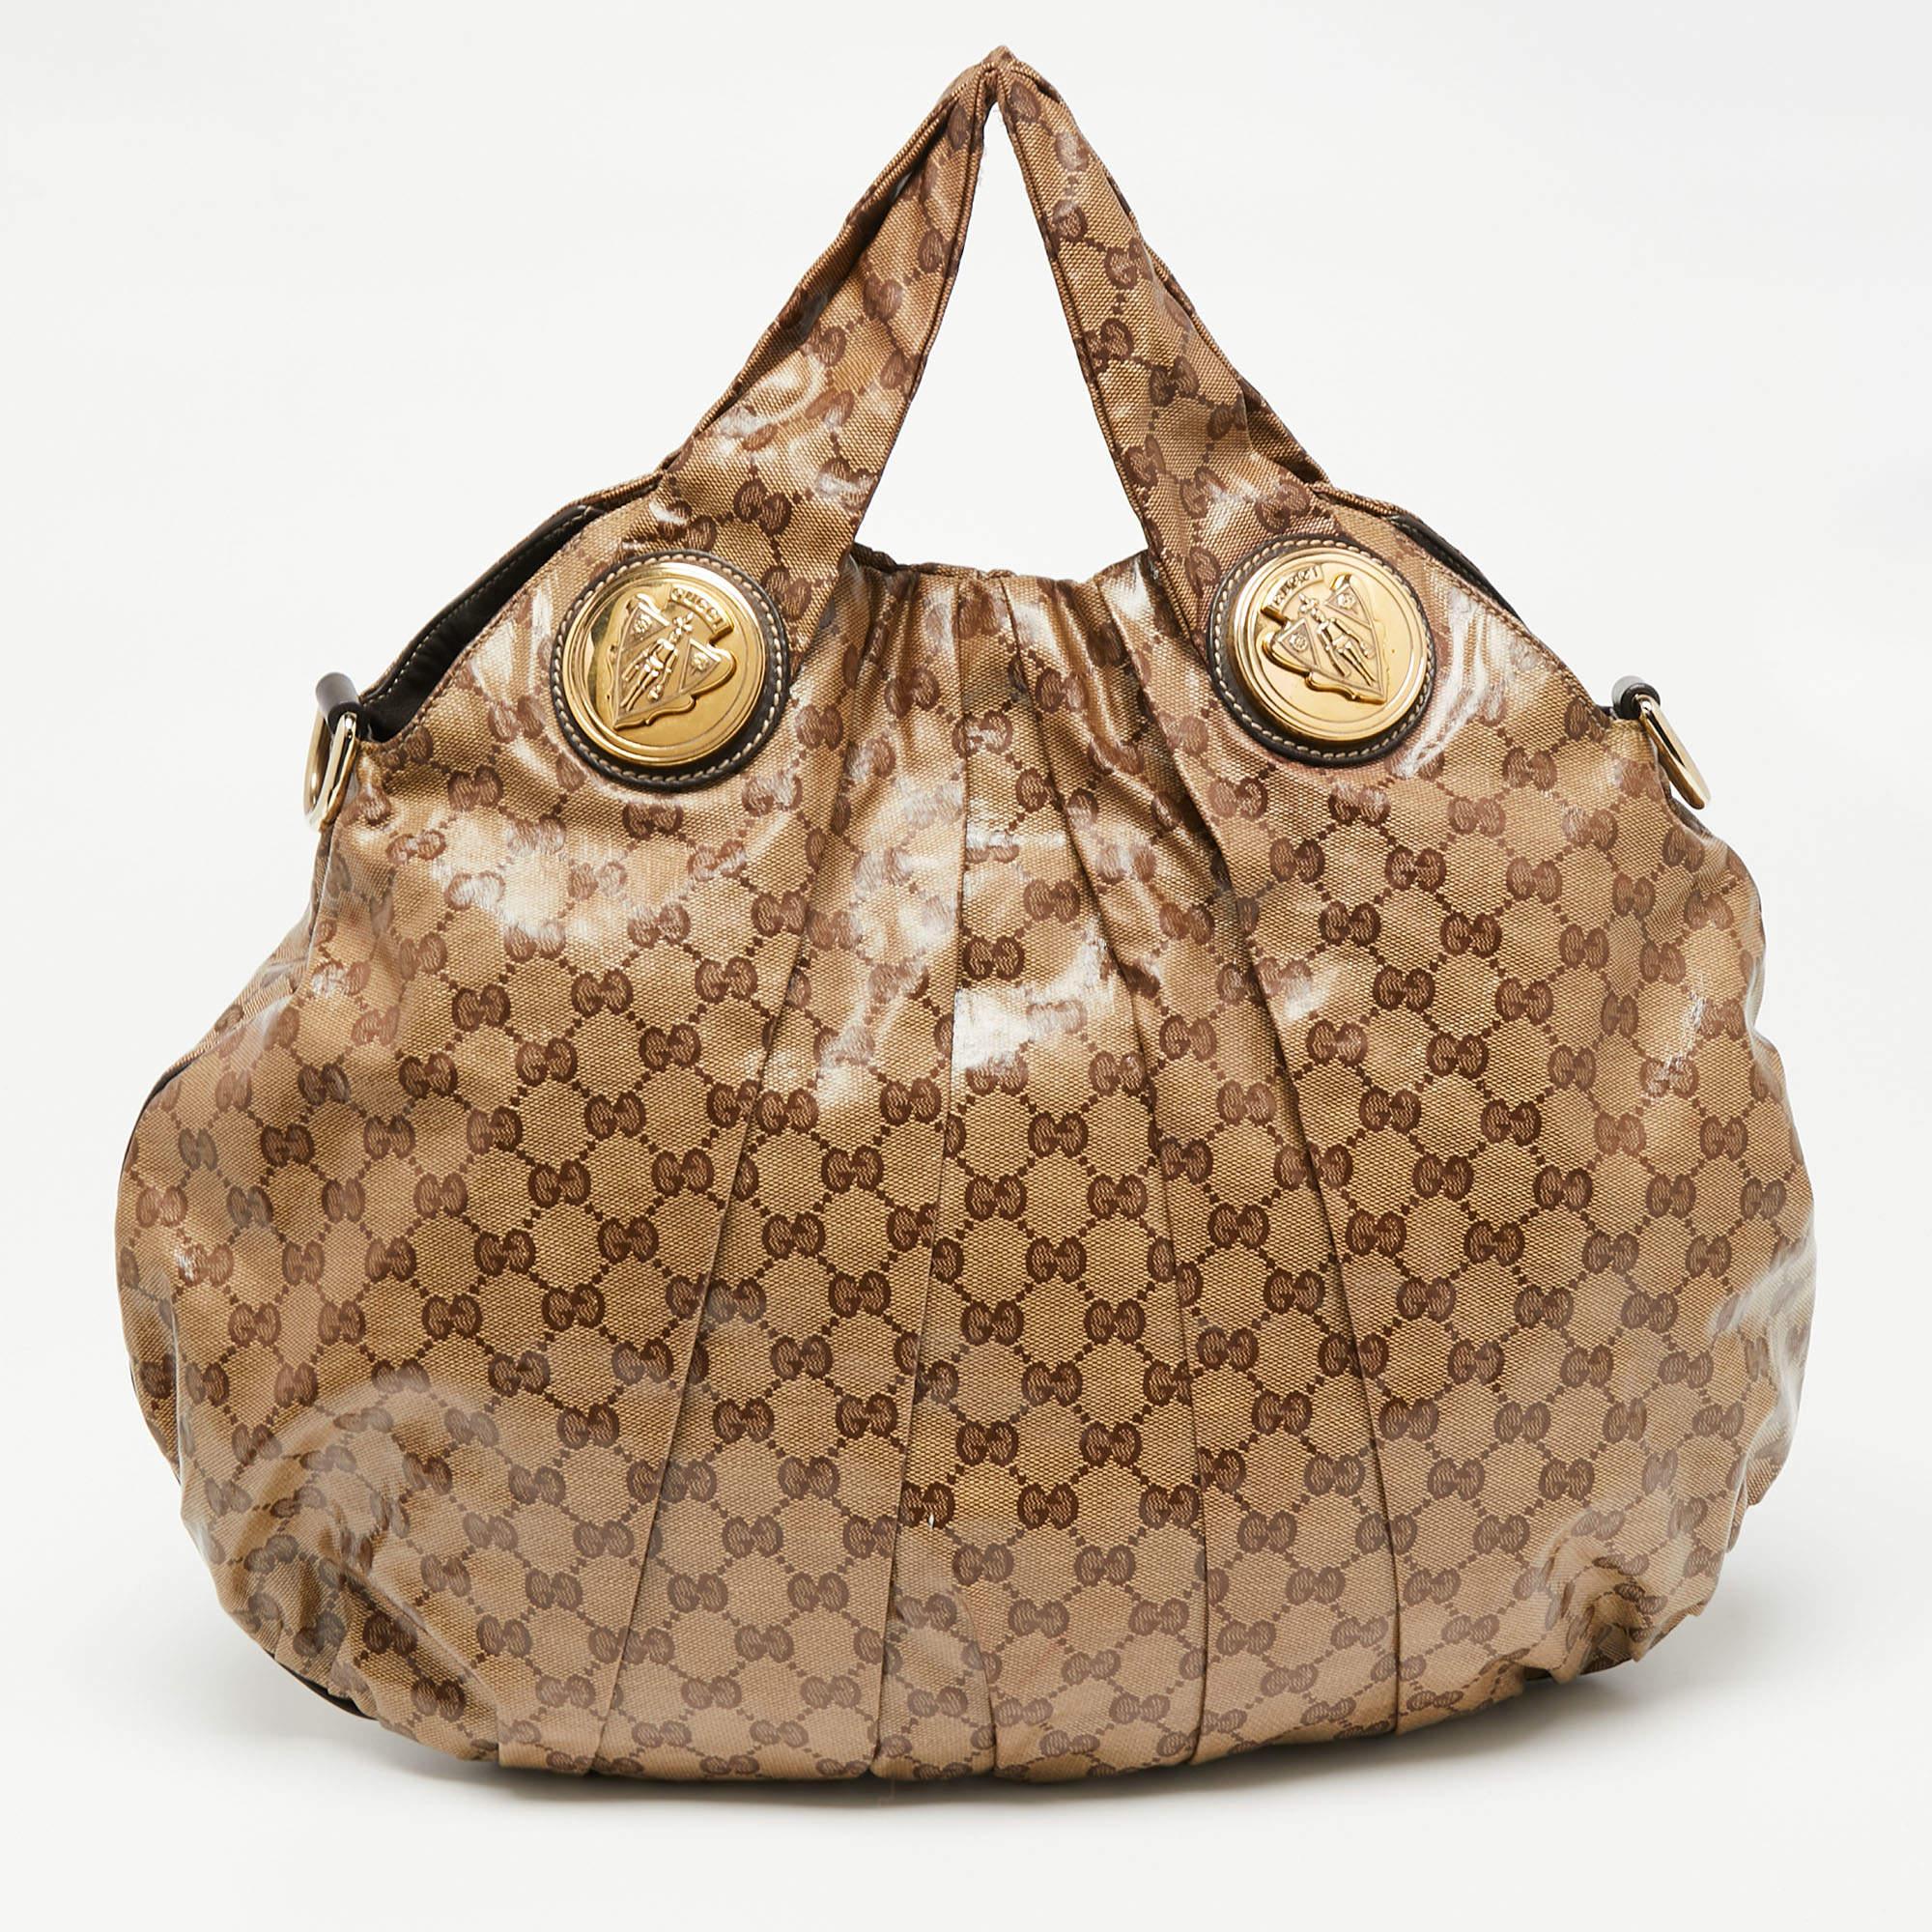 Die Gucci Hysteria wurde 2008 eingeführt und wird von Stilliebhabern auf der ganzen Welt geliebt und bewundert. Das Innere dieser Tasche aus Stoff und Leder ist geräumig, um Ihre täglichen Habseligkeiten sicher aufzubewahren. Die aus dem